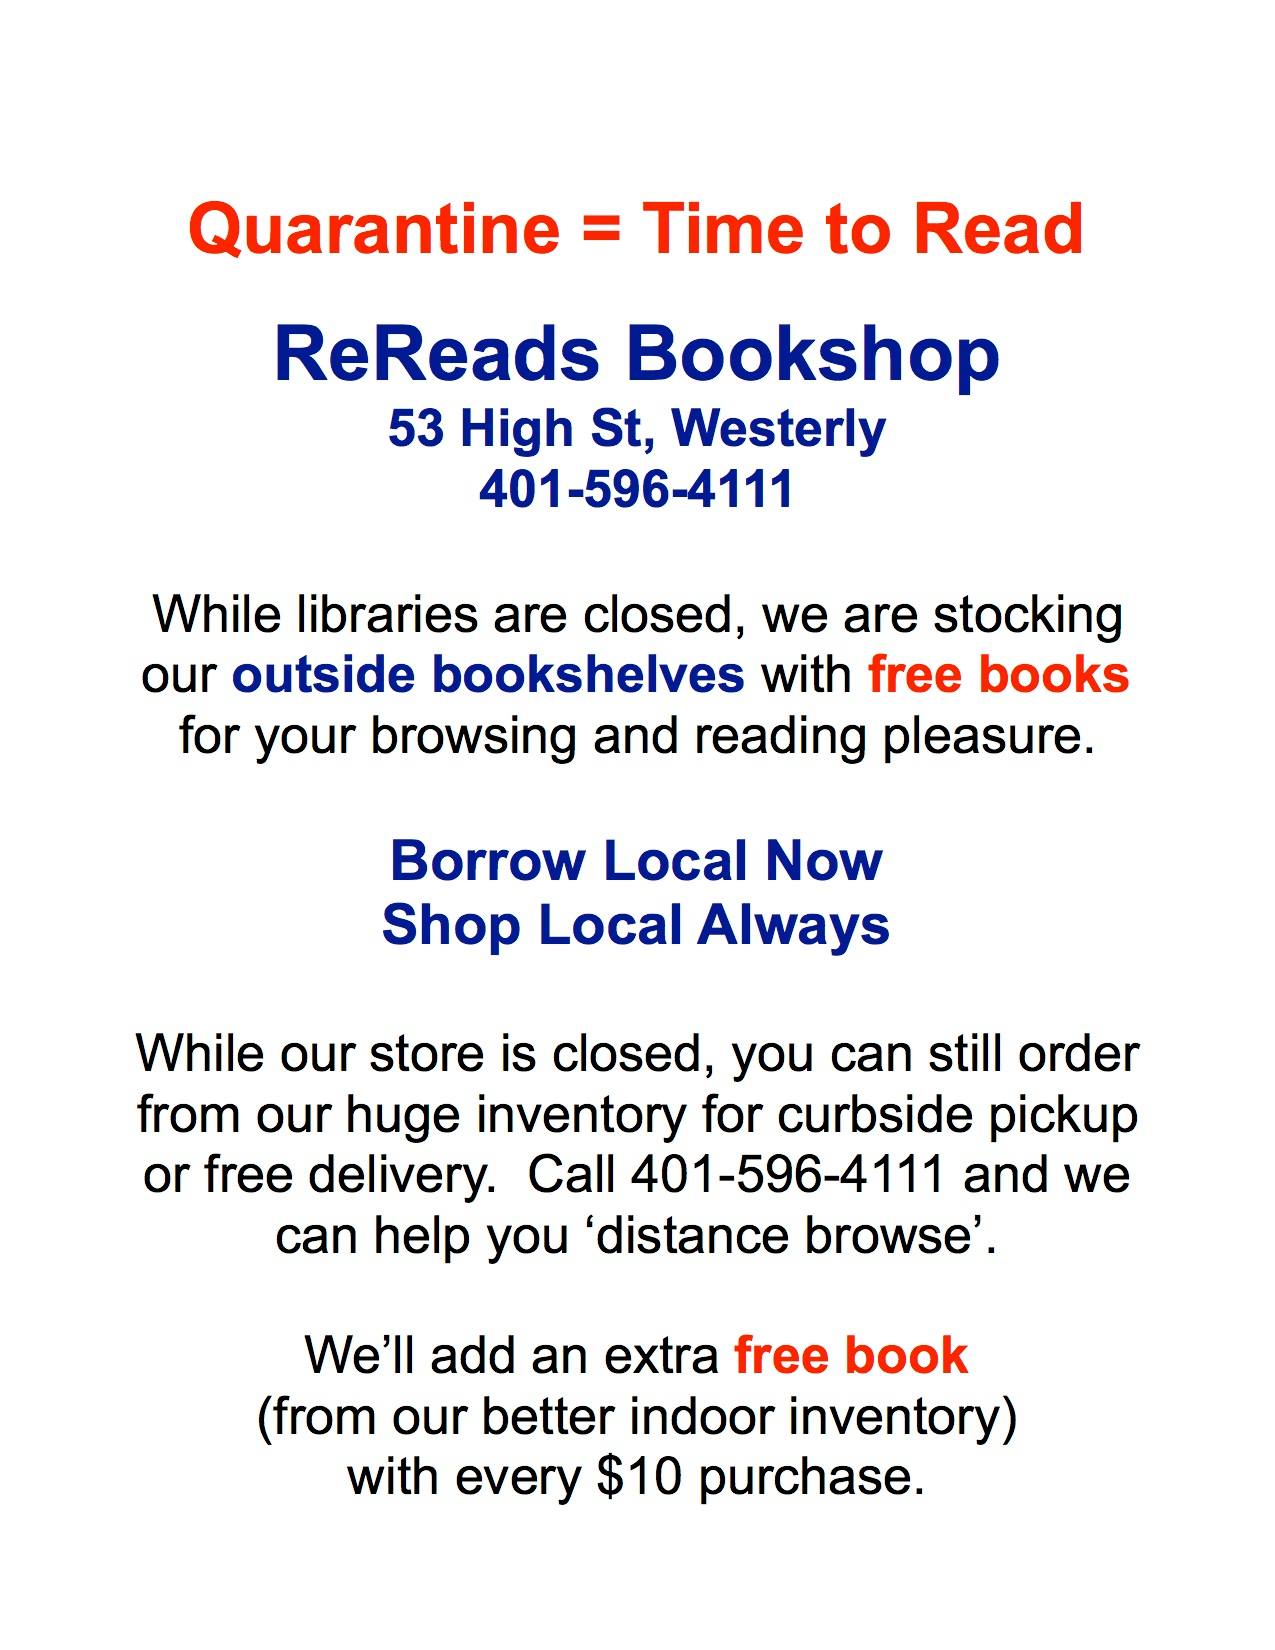 ReReads Bookshop